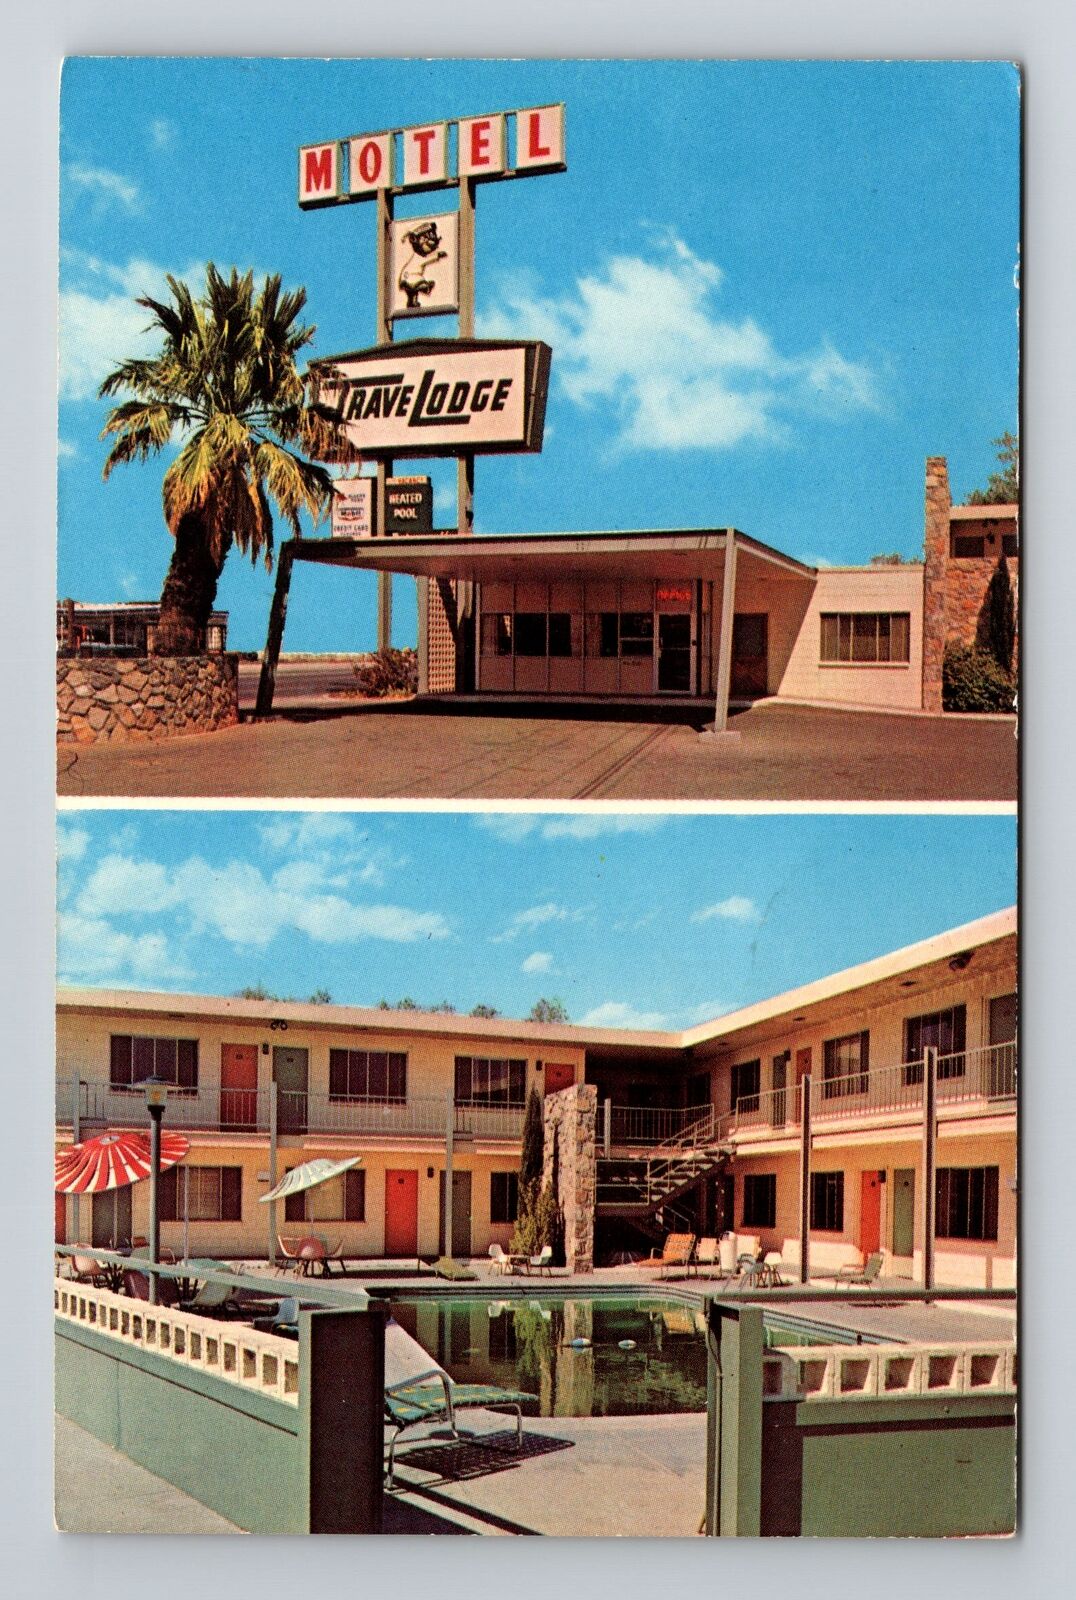 El Paso TX-Texas, El Paso E. Travel Lodge, Advertising, Antique Vintage Postcard